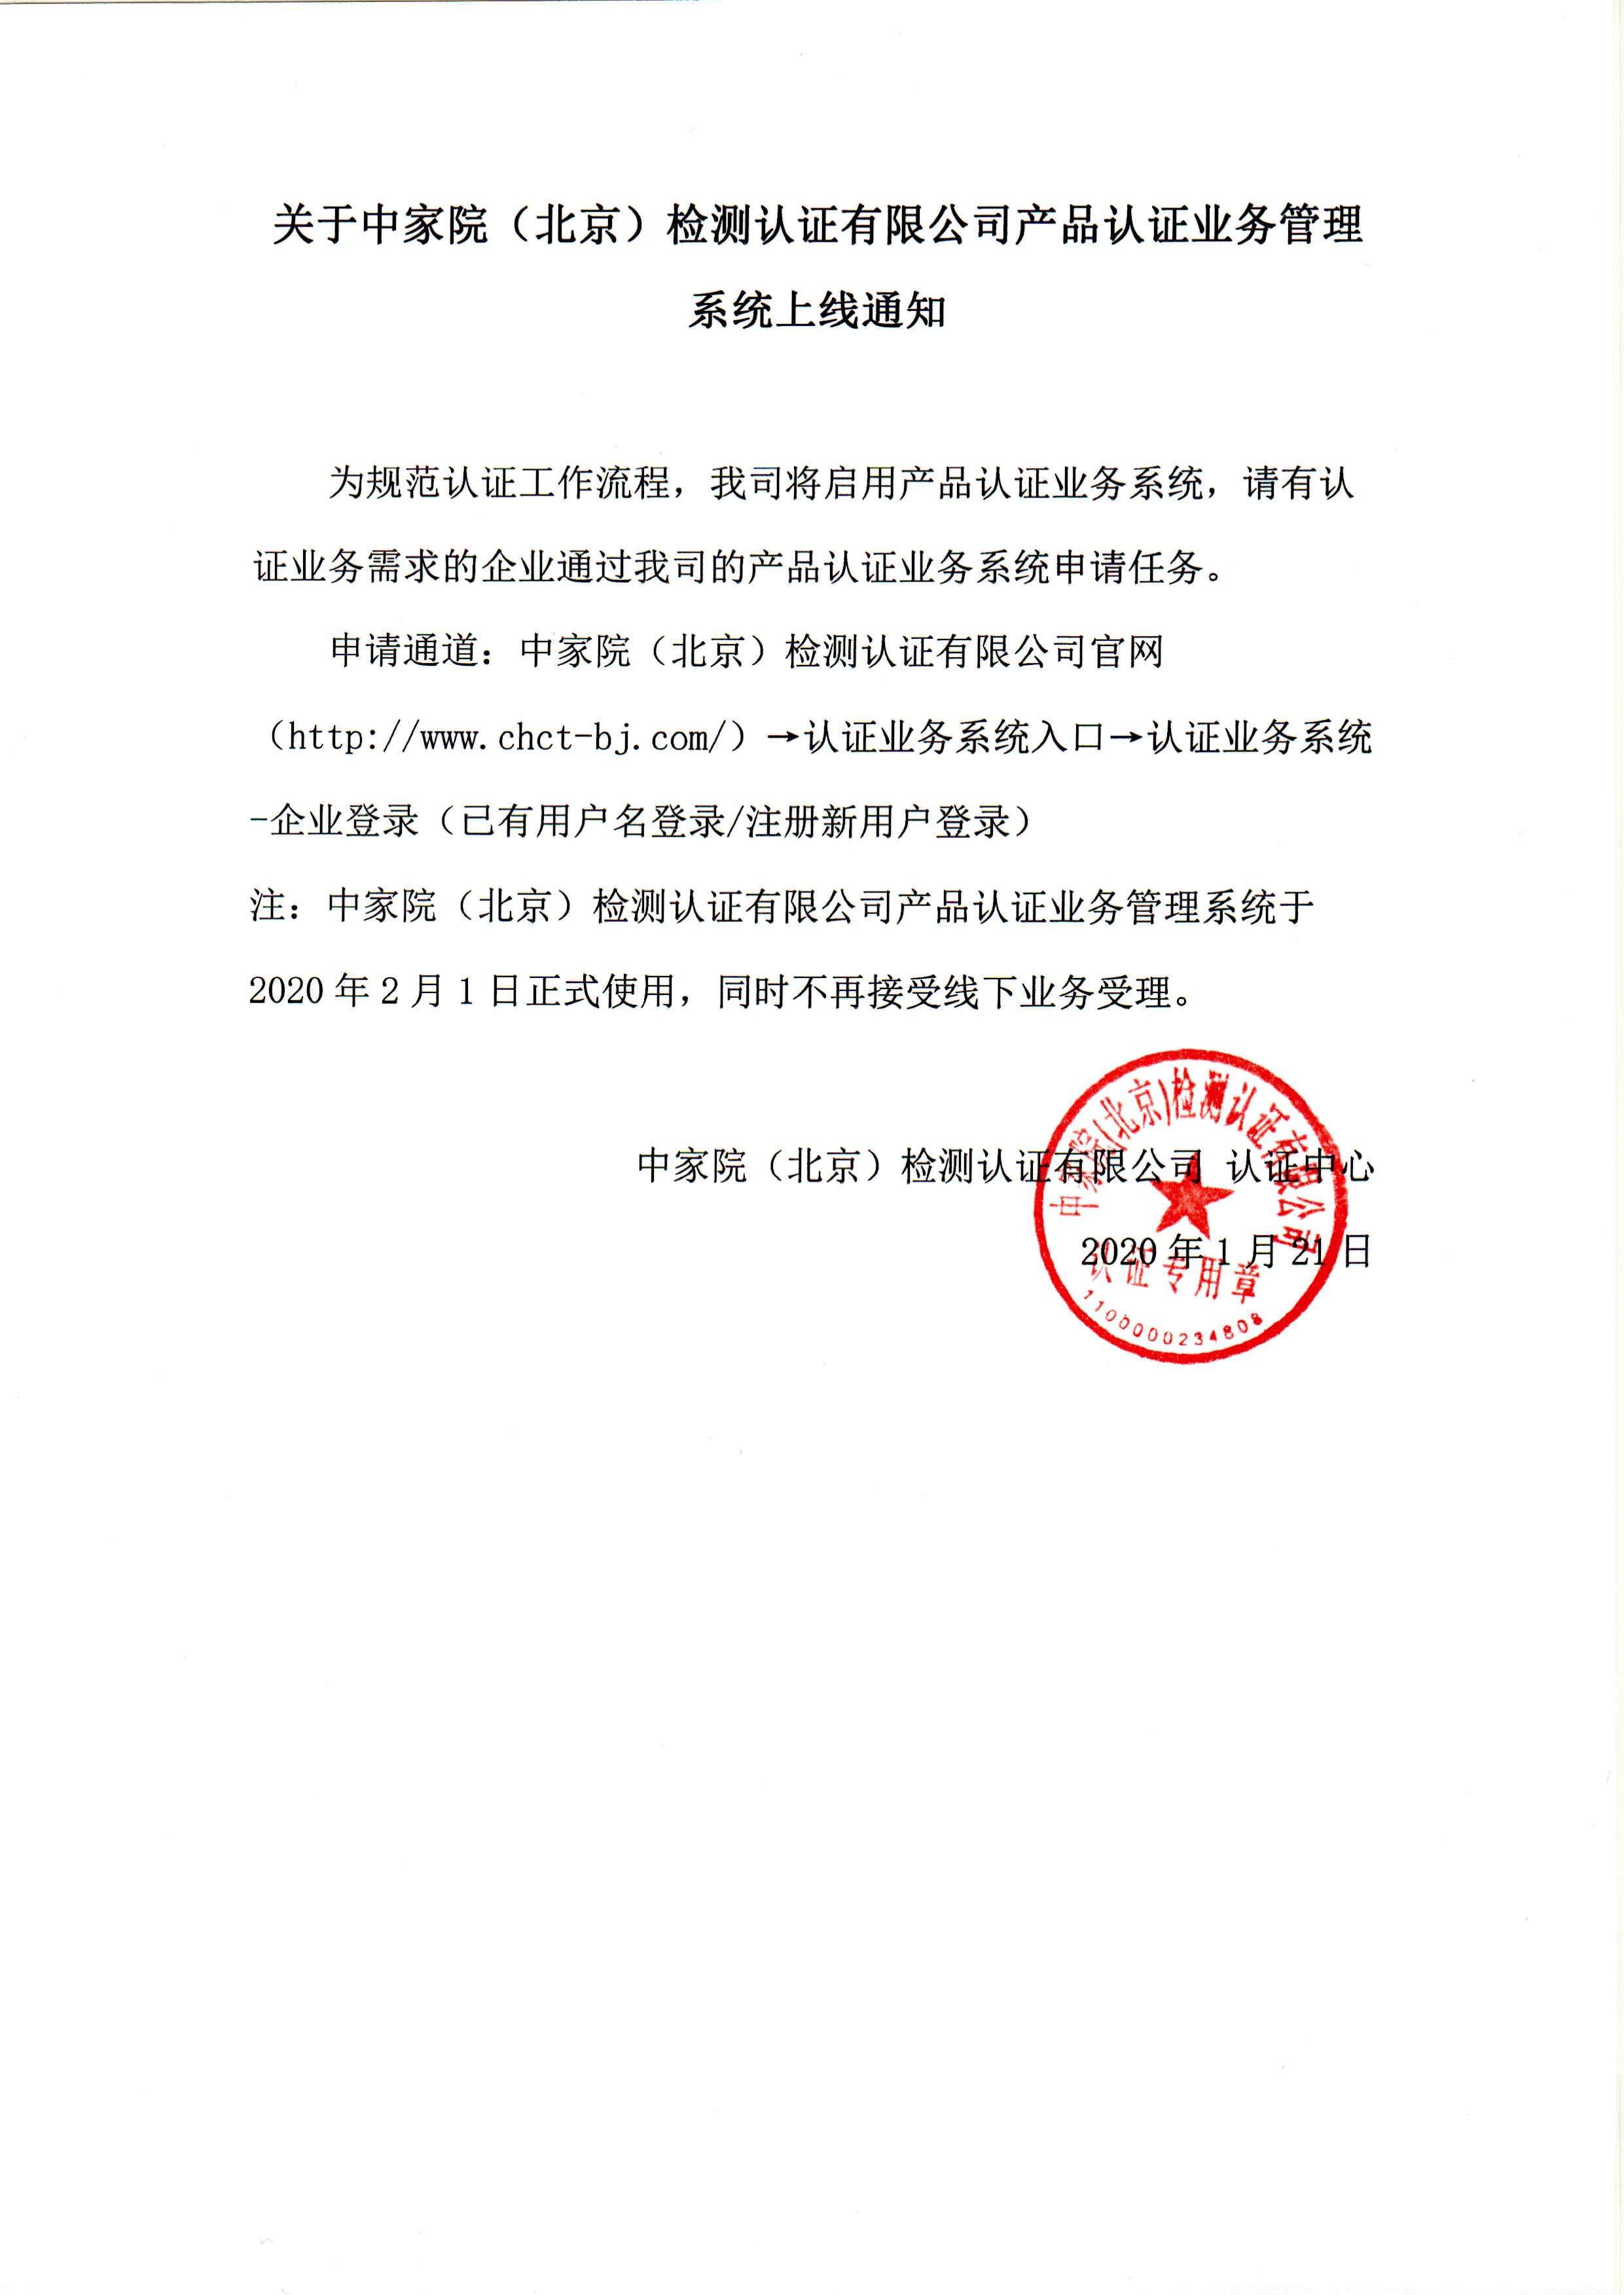 关于中家院（北京）检测认证有限公司产品认证业务管理系统上线通知.jpg